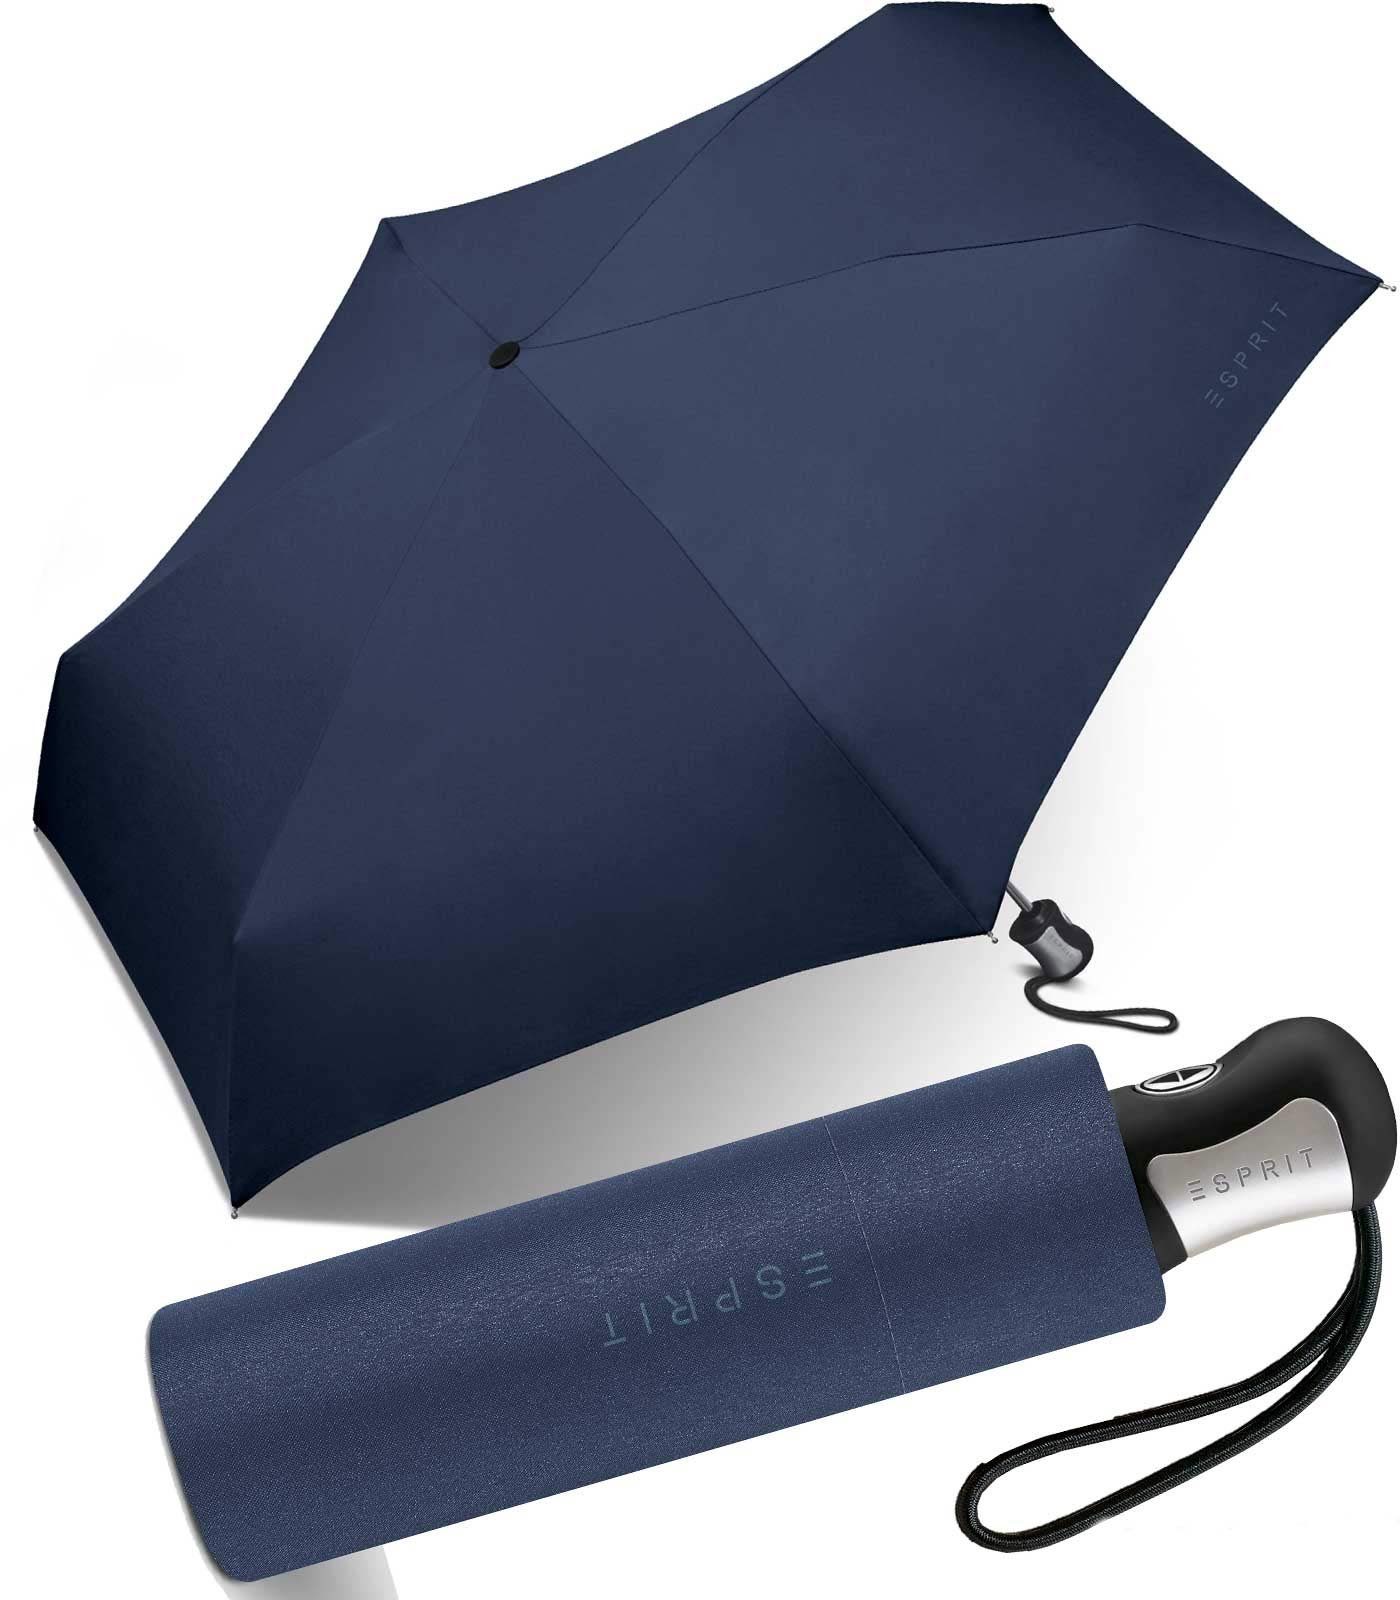 blau für Farben Automatik, Damen - klassischen Esprit kräftigen, Auf-Zu in Schirm schöner, Langregenschirm kleiner